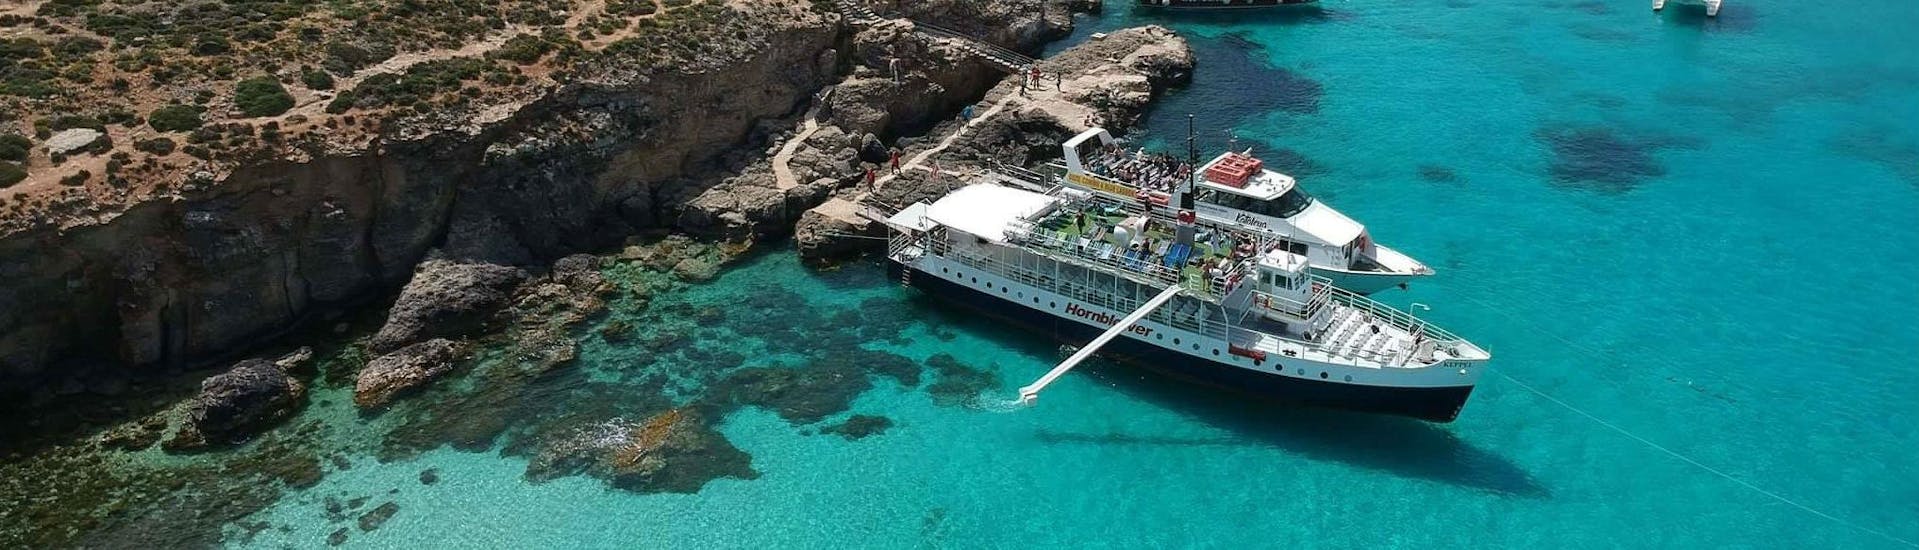 Bateau ancré pendant l'excursion en bateau à Comino, y compris le Blue Lagoon et les grottes de Santa Maria, organisée par Hornblower Cruises Bugibba.